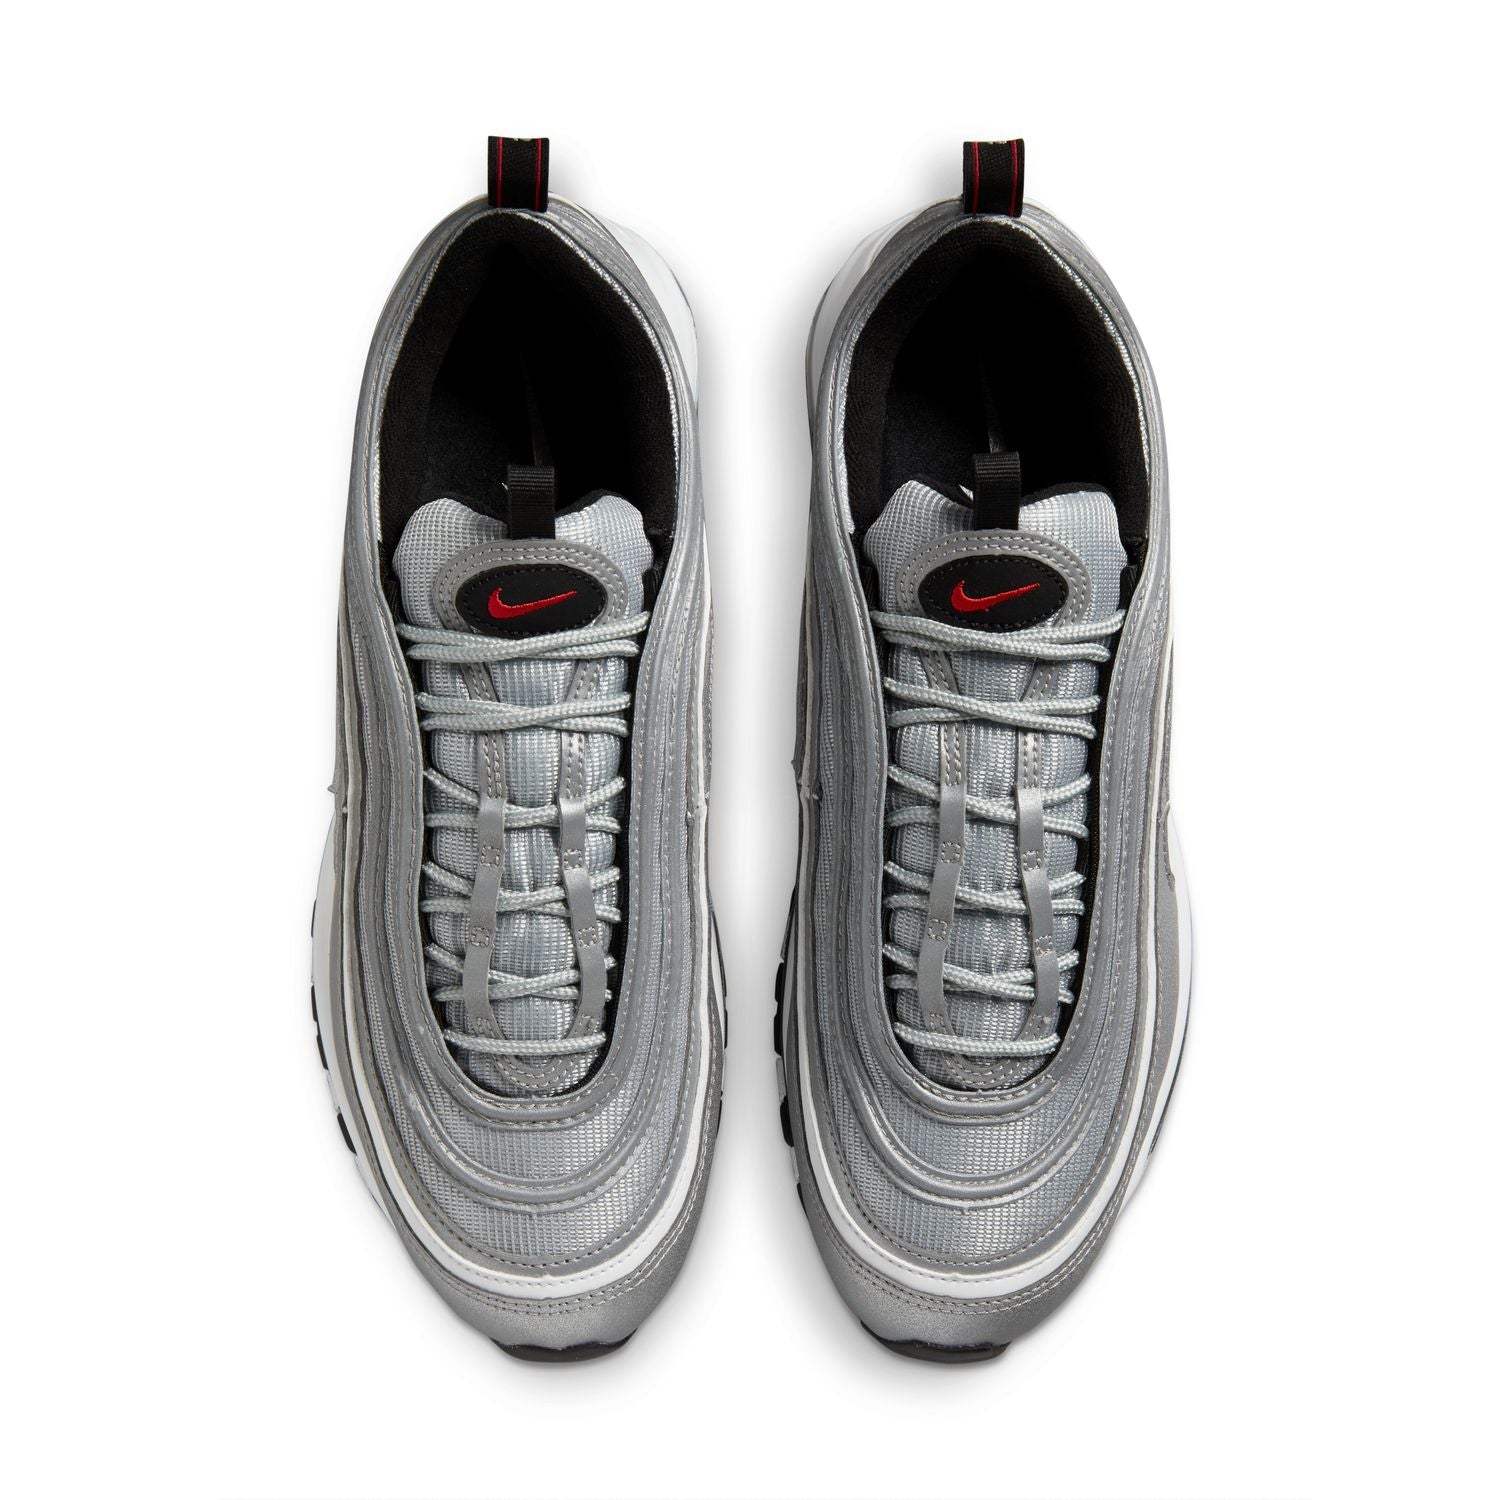 Nike Air Max 97 OG (DM0028-002) "Silver Bullet"